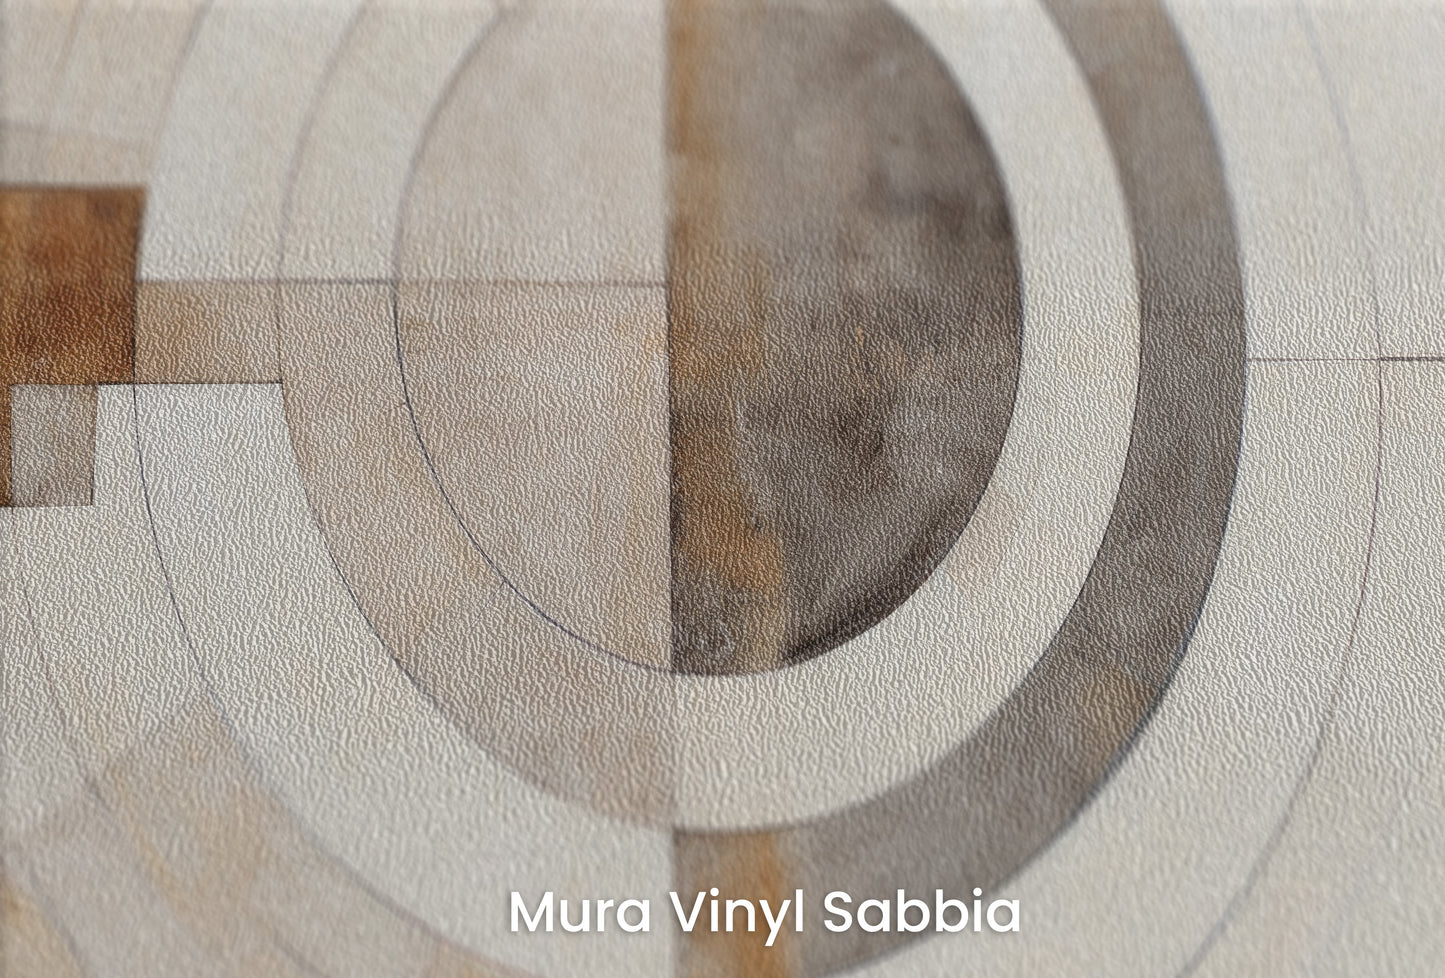 Zbliżenie na artystyczną fototapetę o nazwie ARCHITECTURAL ORBITAL DESIGN #2 na podłożu Mura Vinyl Sabbia struktura grubego ziarna piasku.